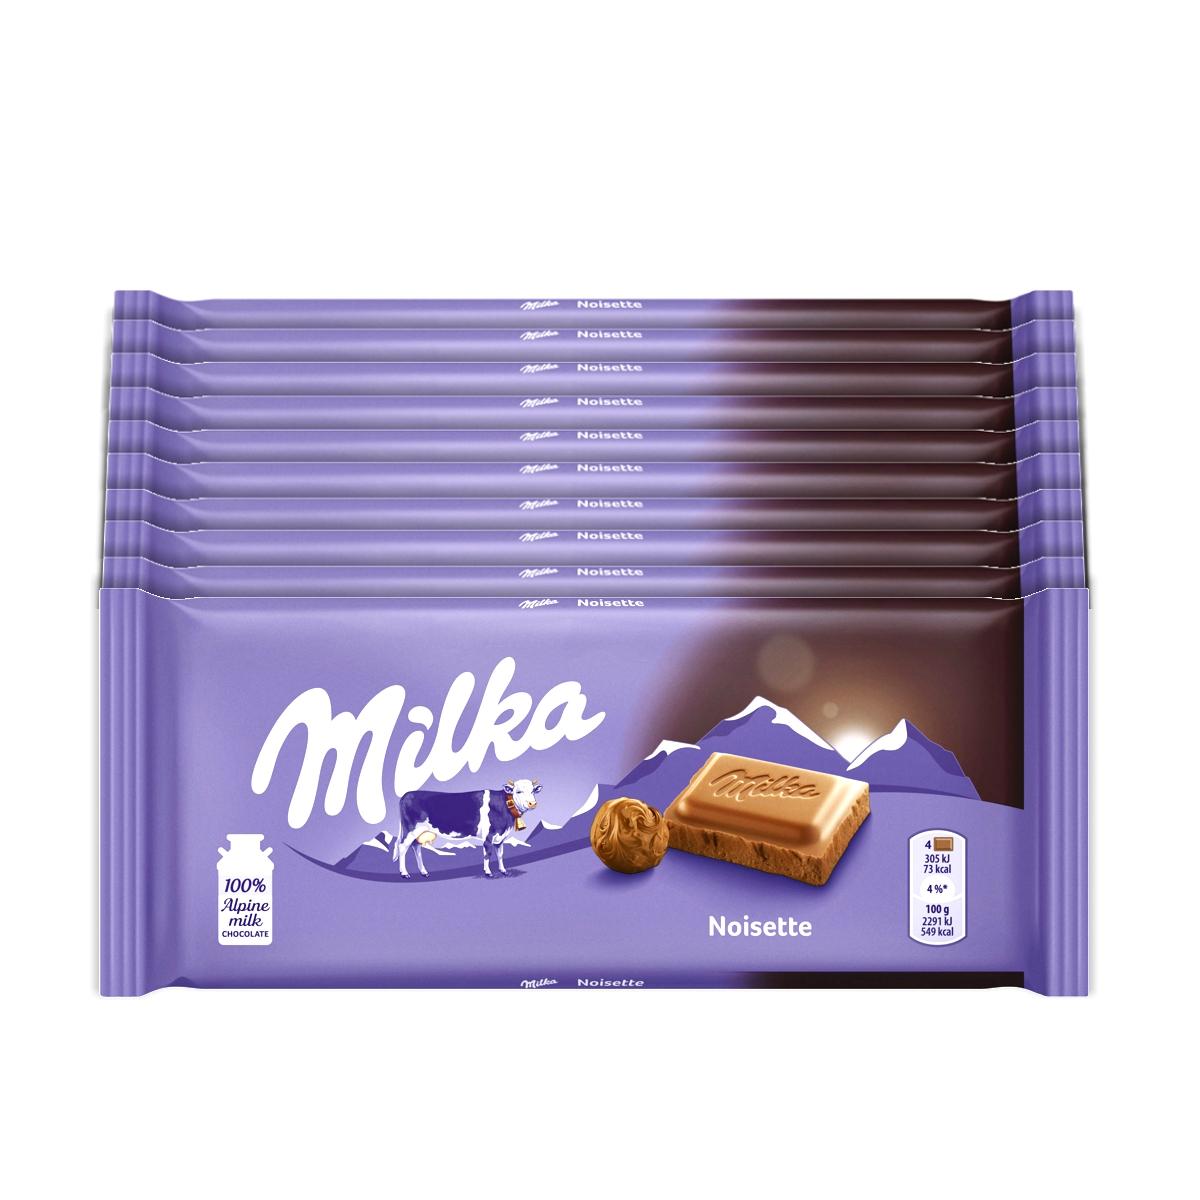 Selected image for Milka Noisette Čokolada, 80g, 10 komada